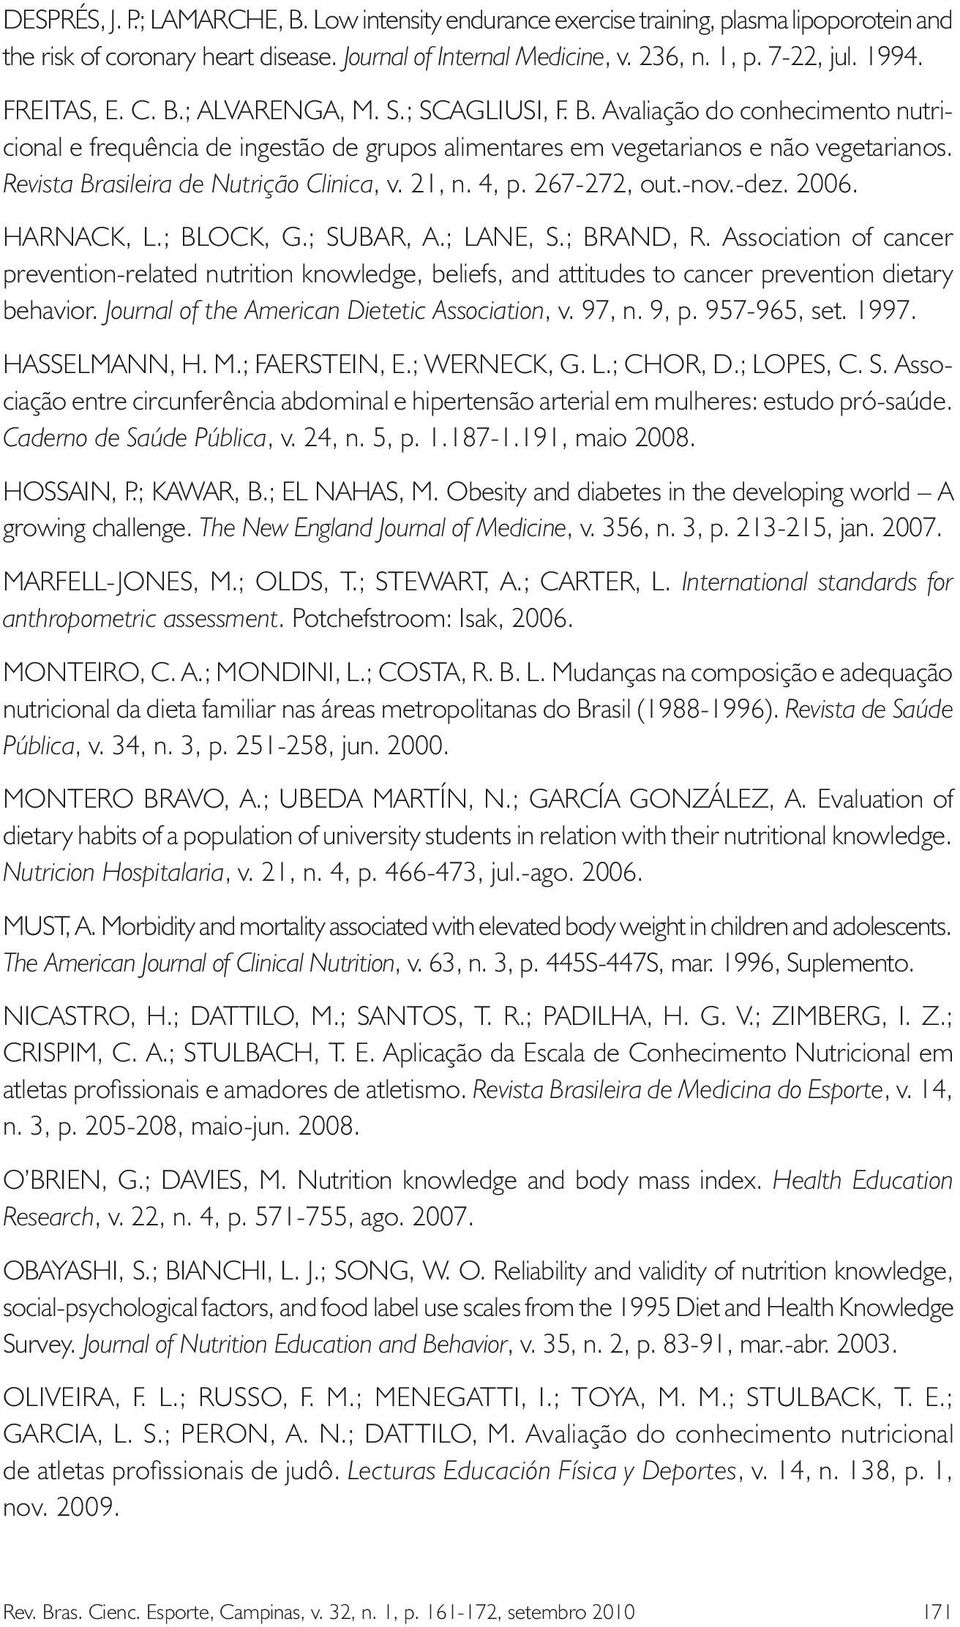 Revista Brasileira de Nutrição Clinica, v. 21, n. 4, p. 267-272, out.-nov.-dez. 2006. Harnack, L.; Block, G.; Subar, A.; Lane, S.; Brand, R.